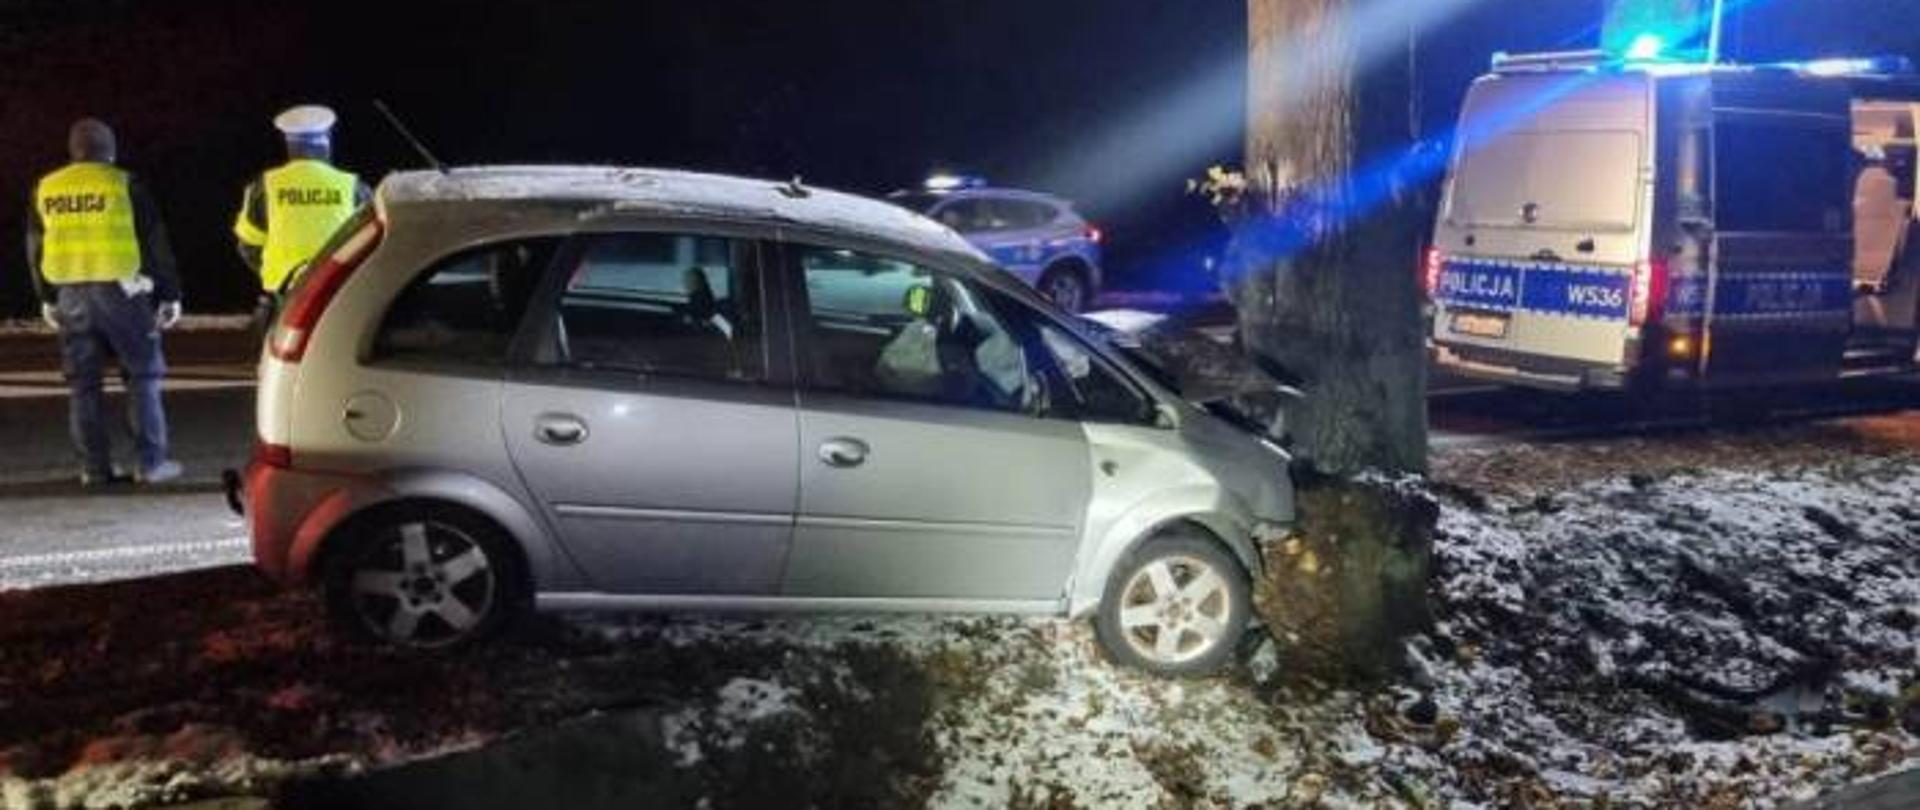 Samochód osobowy z mocno uszkodzonym przodem oparty o drzewo, dwa radiowozy i dwóch policjantów.